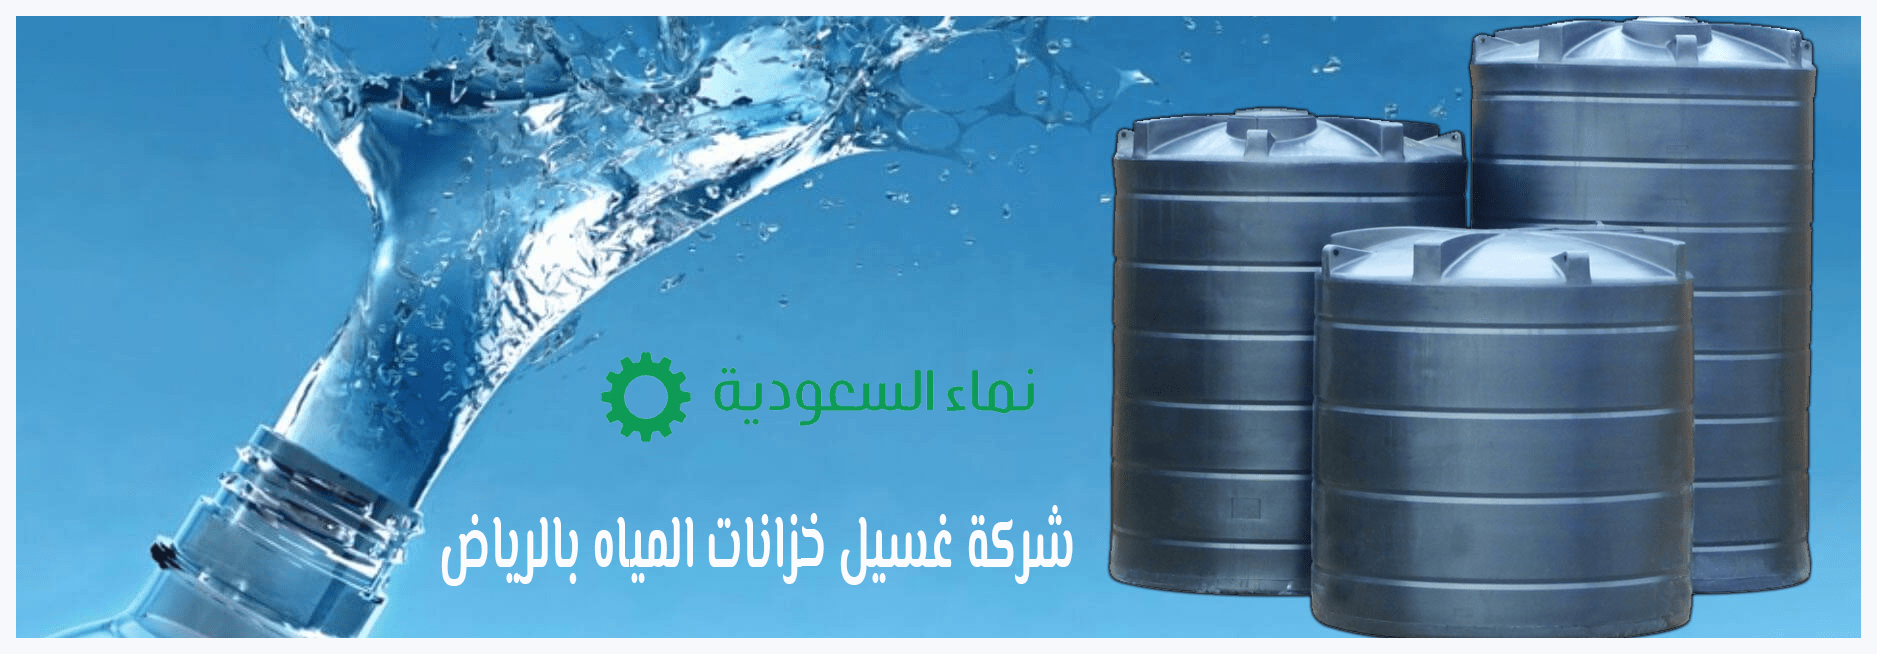 شركة غسيل خزانات المياه بالرياض 0506065042 خصم 25%